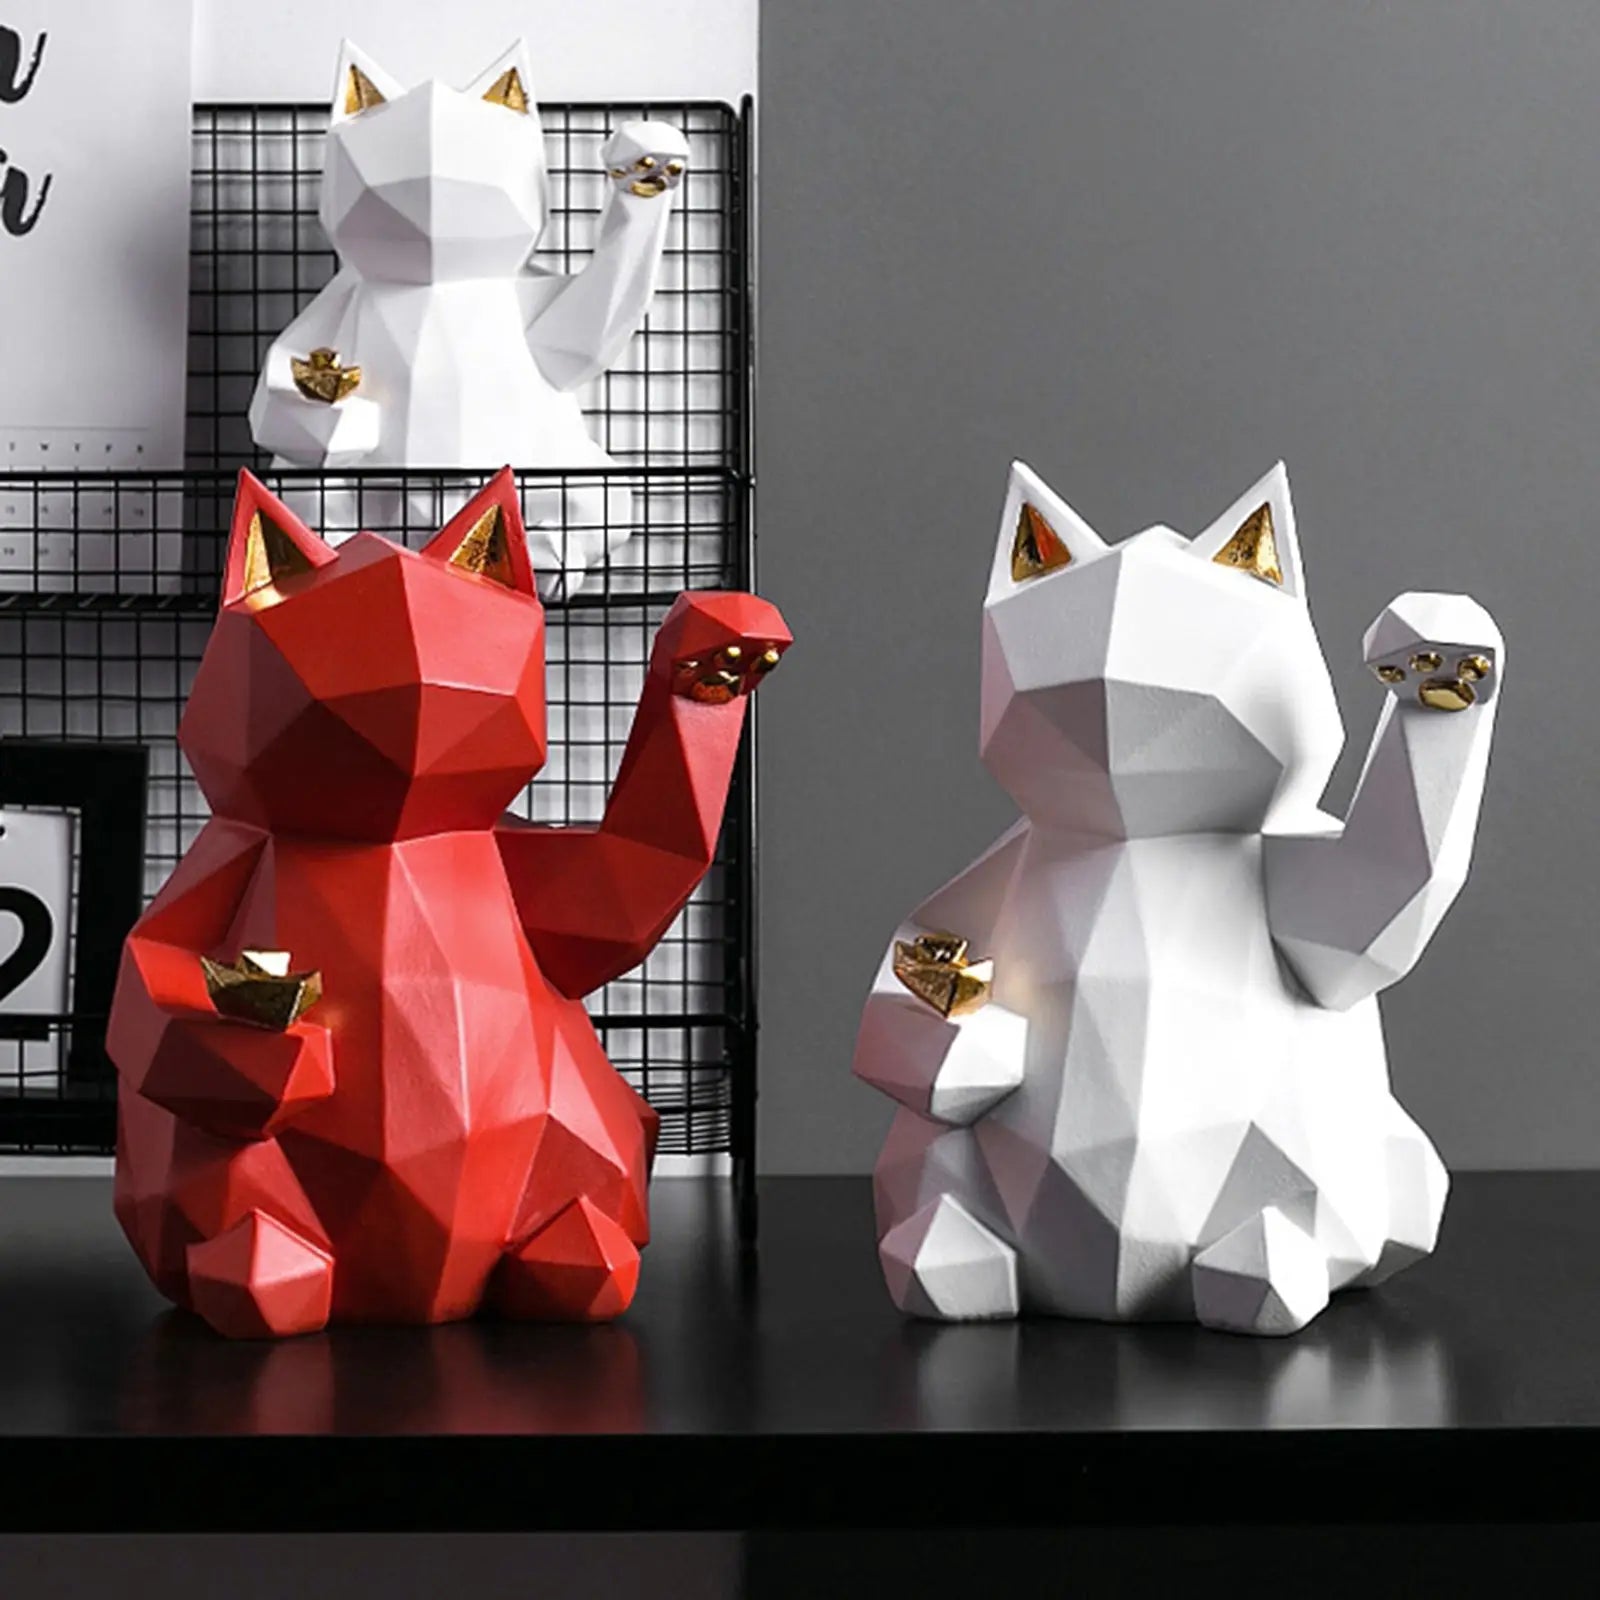 Escultura de origami blanca Gato de la suerte